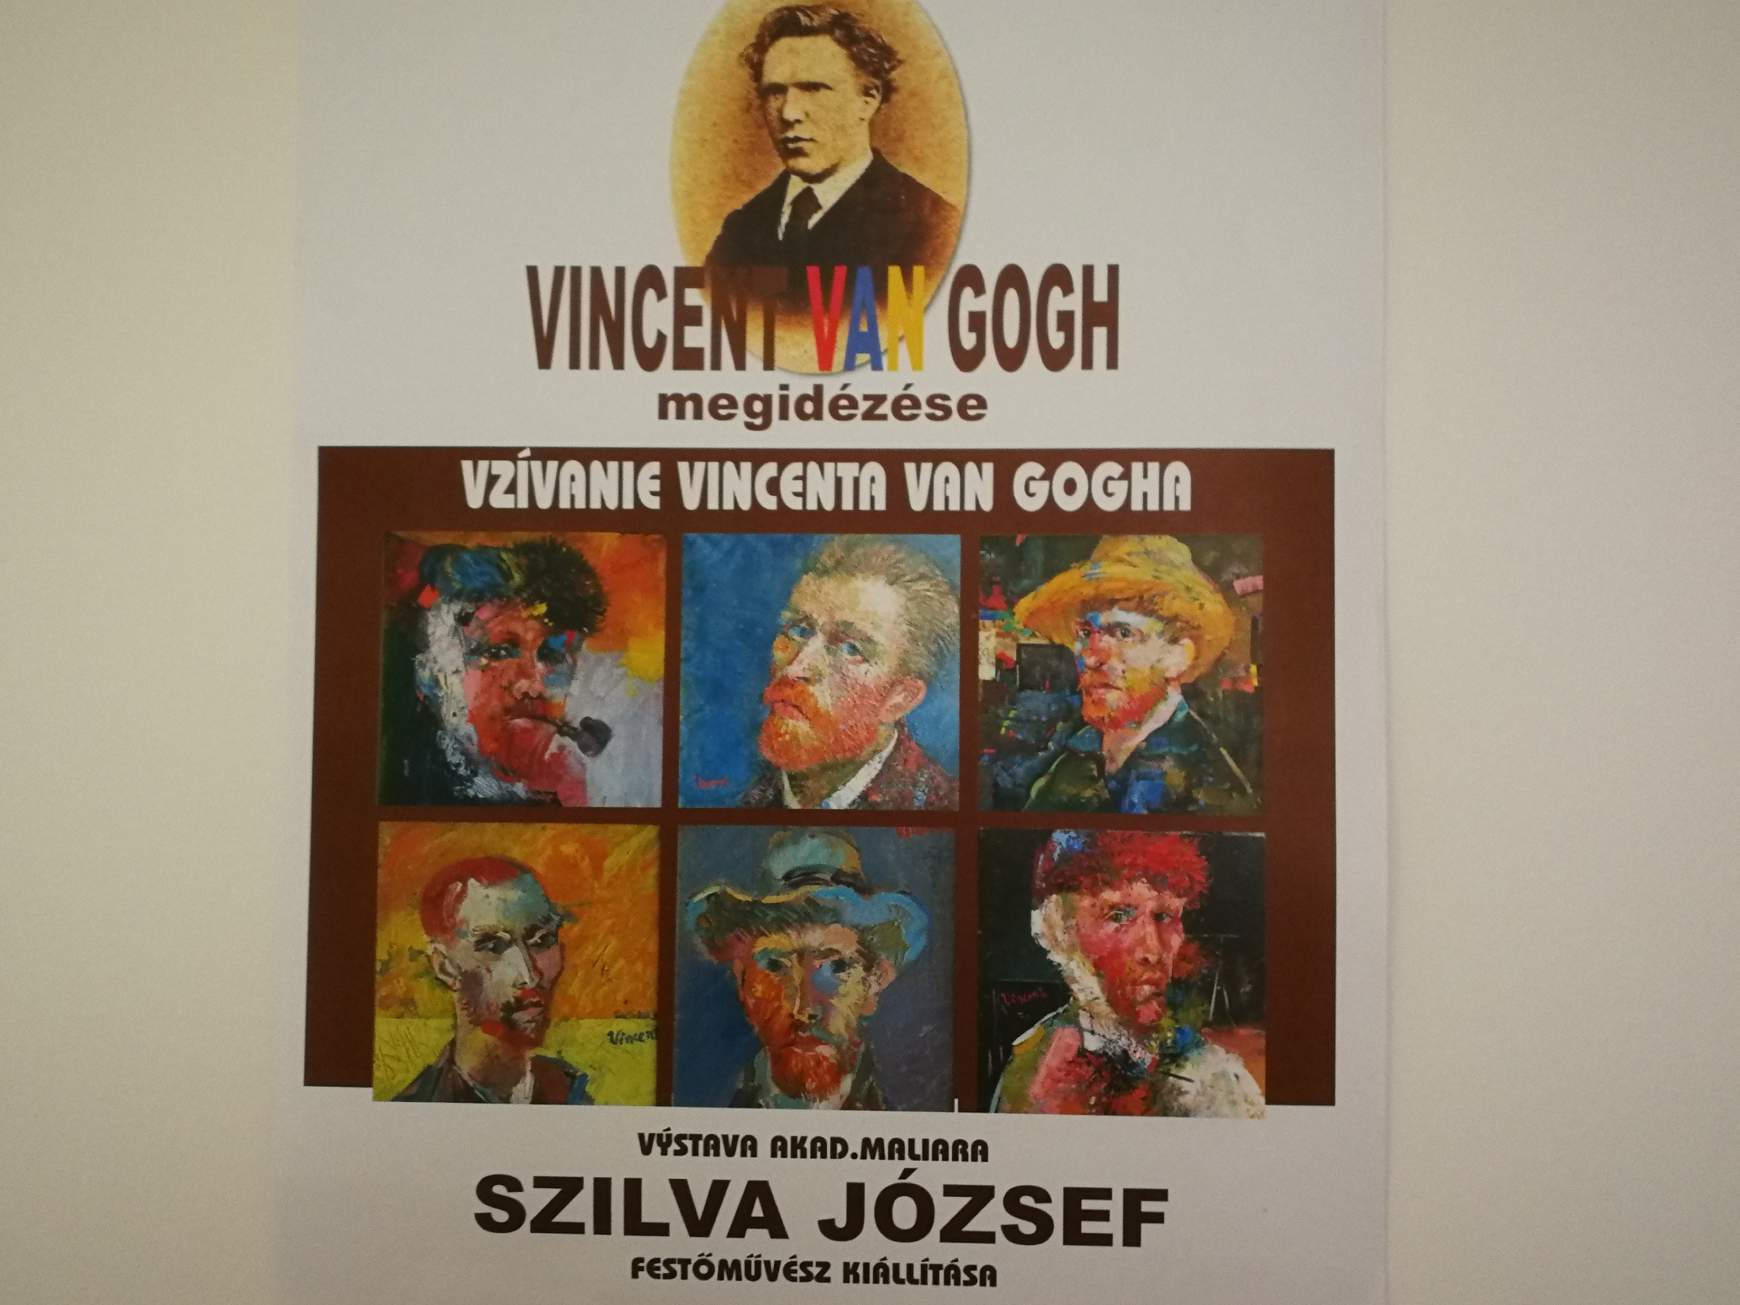 Vincent van Gogh megidézése – Szilva József festőművész kiállítása a komáromi PLATZ Galériában 